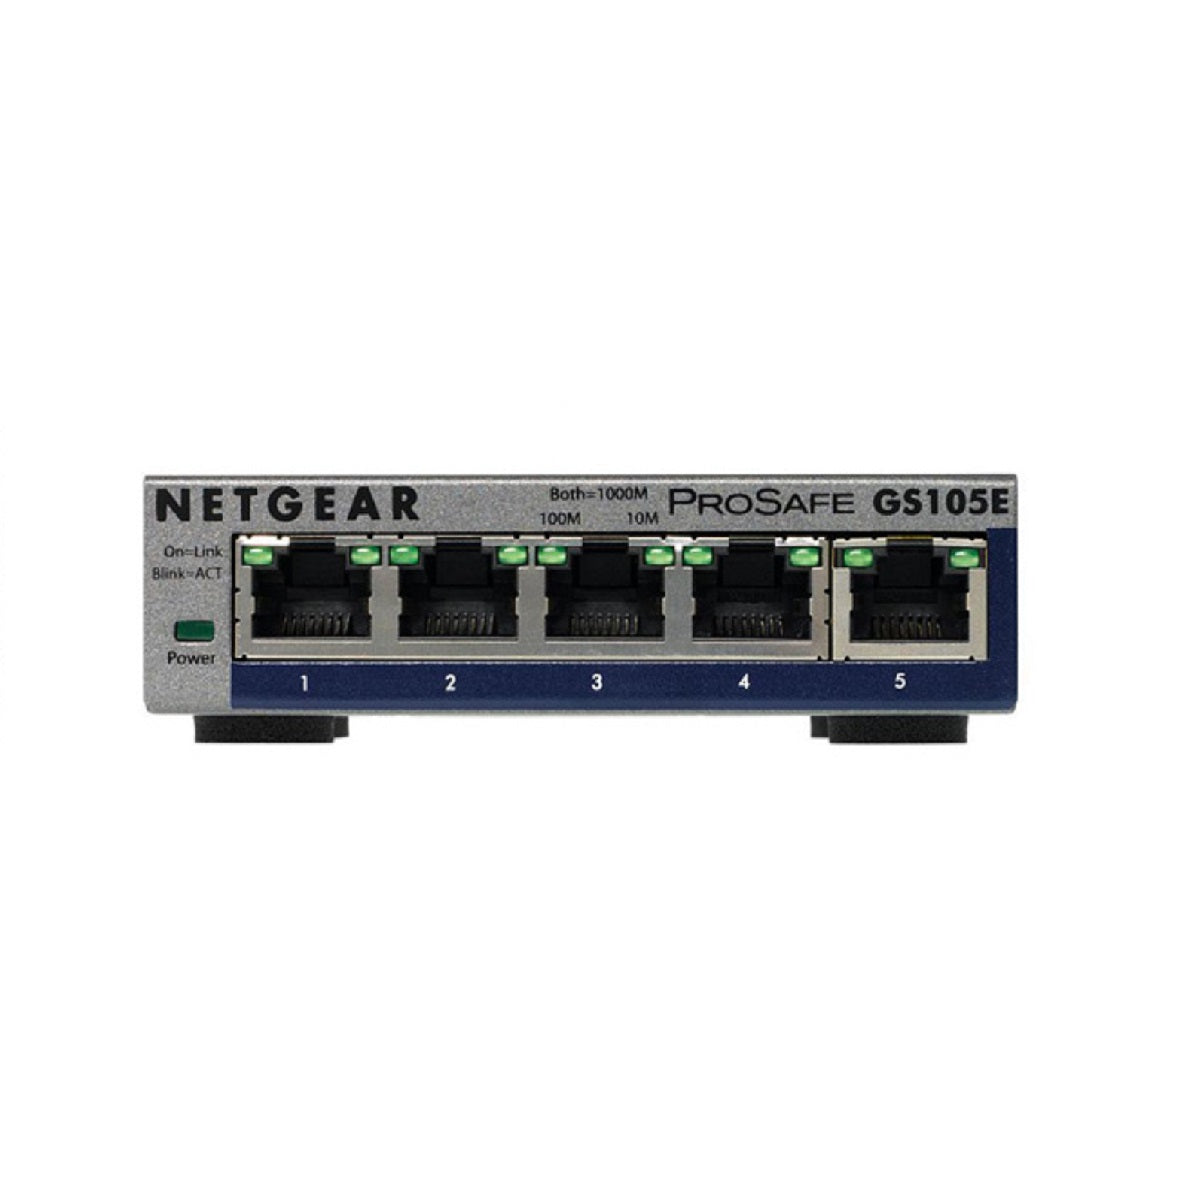 NETGEAR GS105E ProSAFE 5-Port Desktop Gigabit Switch